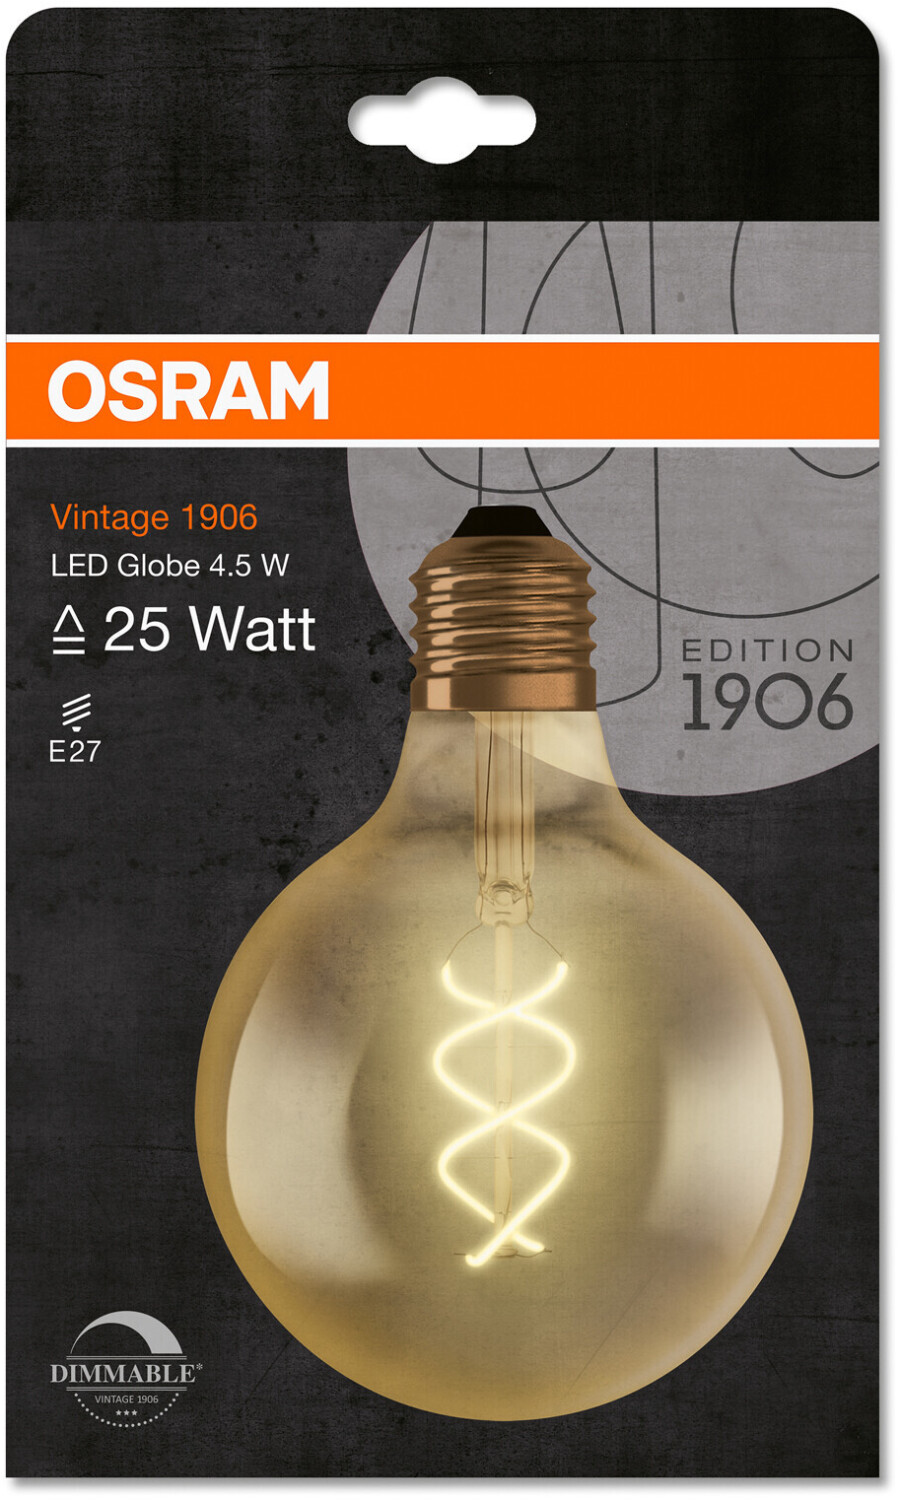 962095 - Ledvance ] Ampoule décorative LED - filament - E27 - 2500K